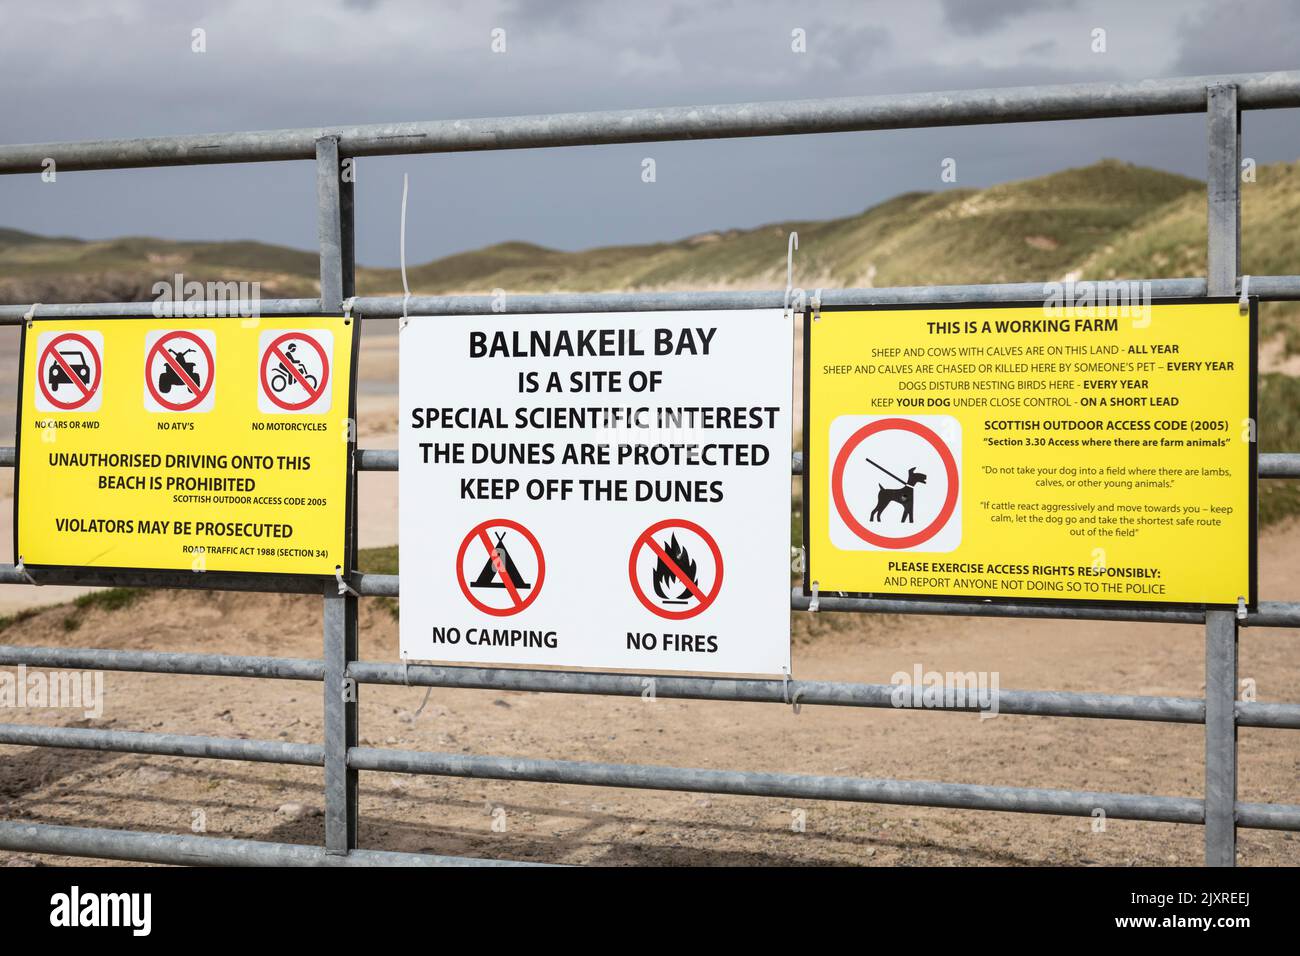 Señal de advertencia para 'Keep off the dunes', Balnakeil Bay, Escocia. Foto de stock